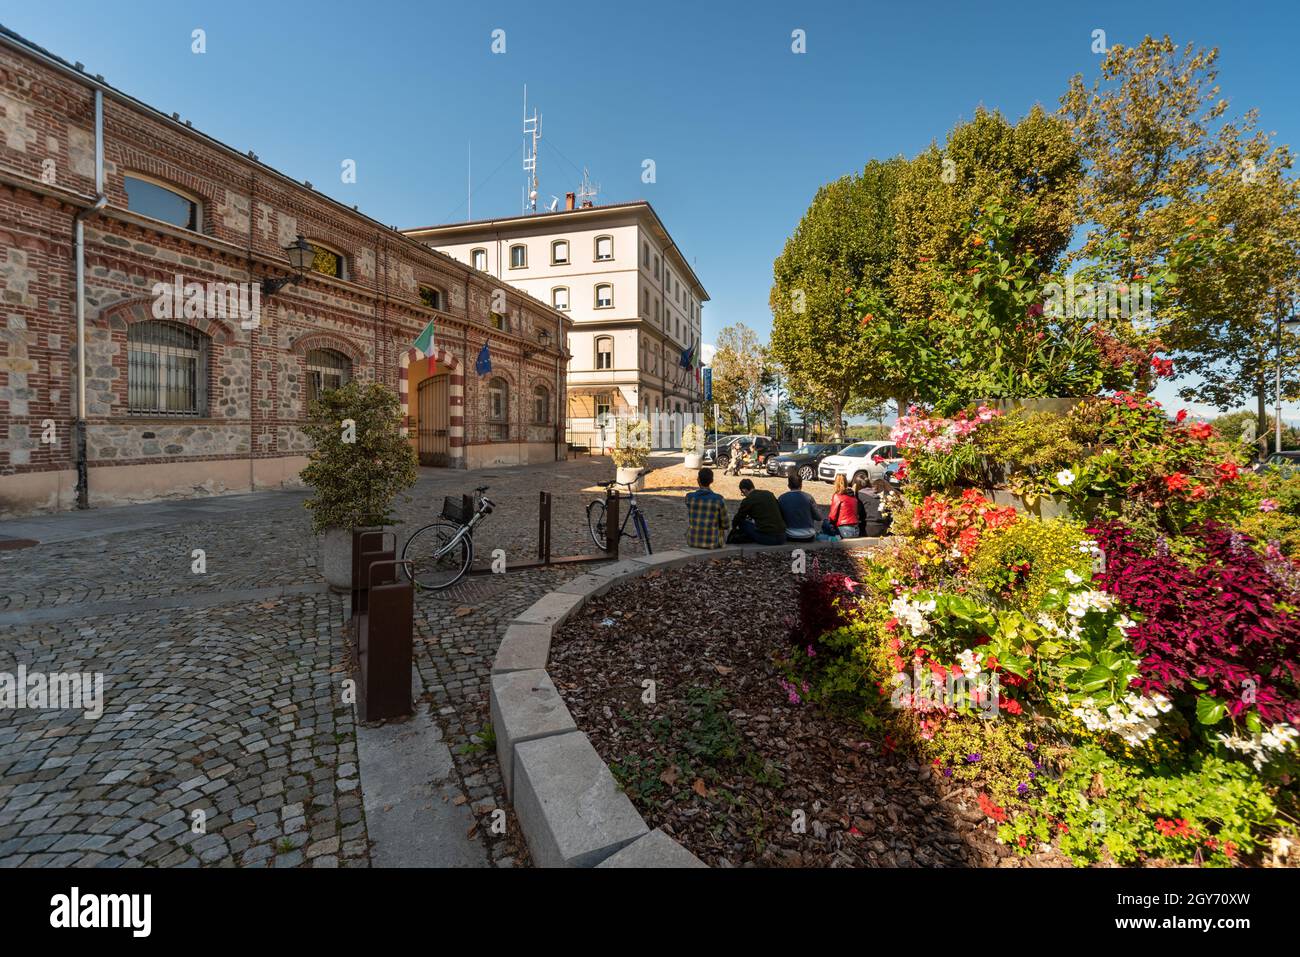 Cuneo, Piémont, Italie - 6 octobre 2021 : Piazza Torino avec le bâtiment de la Faculté d'agriculture et le bâtiment du quartier général de la police Cuneo Banque D'Images